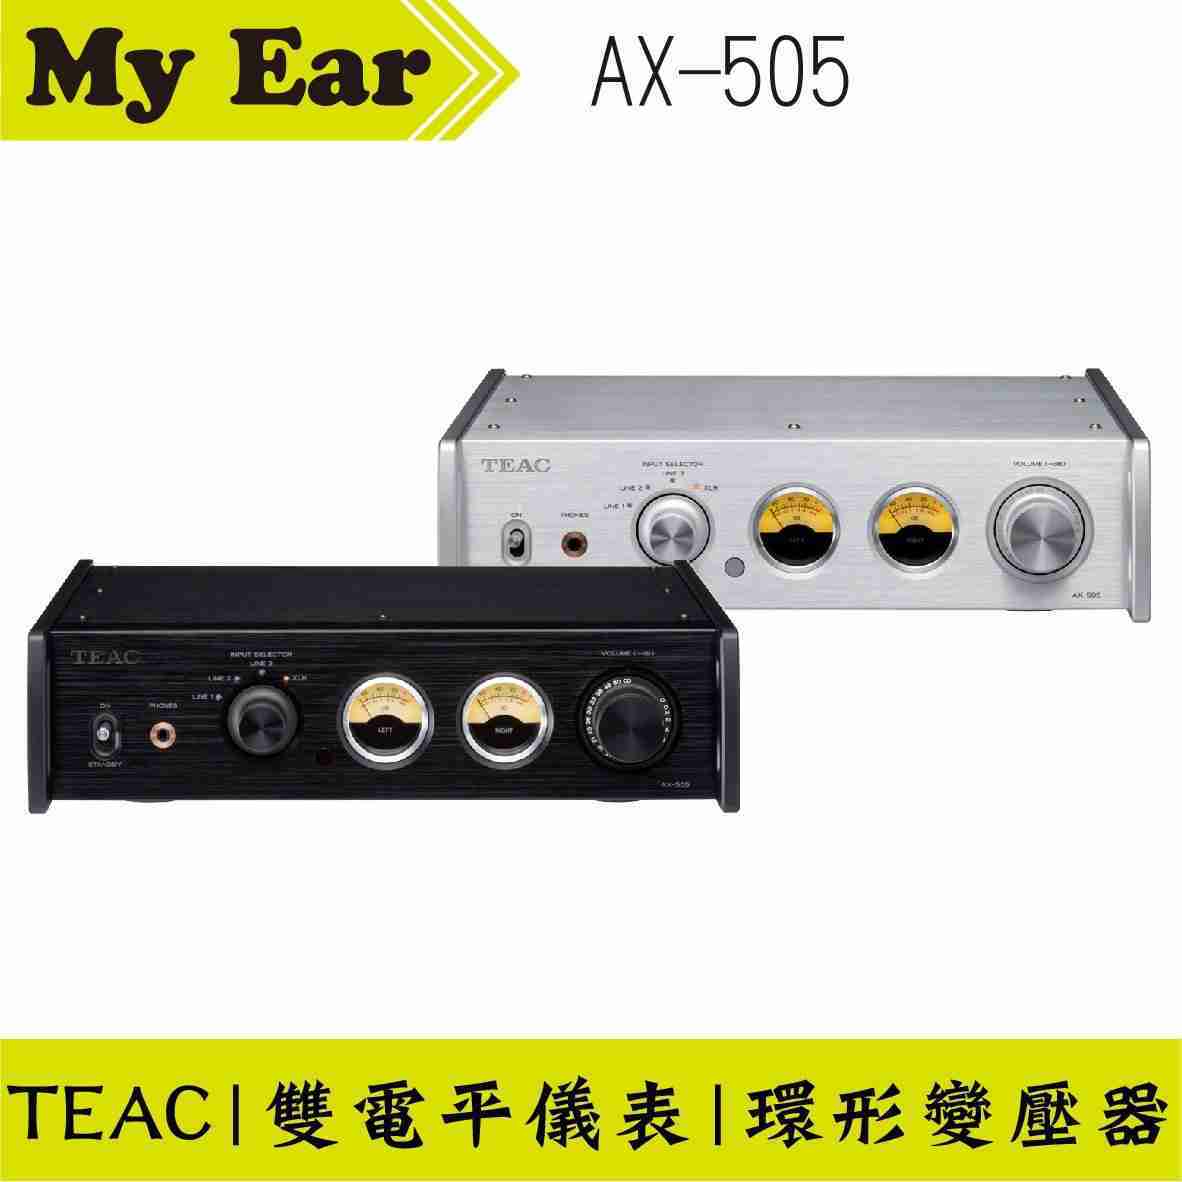 TEAC AX-505 立體聲綜合擴大機 銀色 耳擴 雙電平儀表 | My Ear 耳機專門店